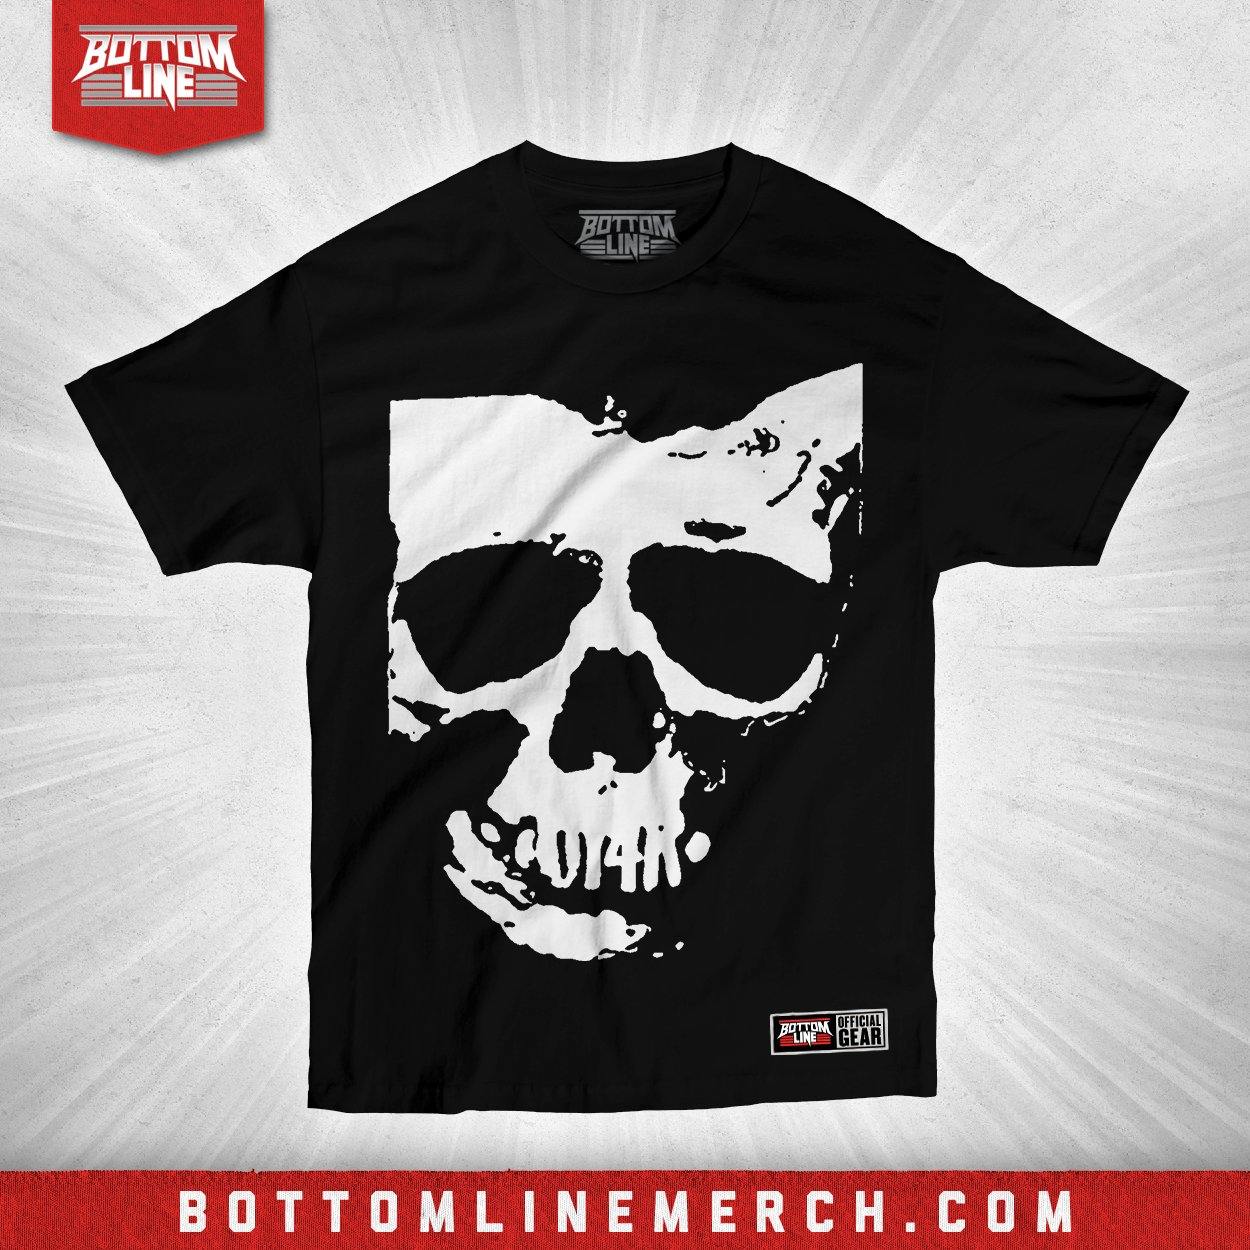 Buy Now – OI4K "Skull-HIO" Shirt – Wrestler & Wrestling Merch – Bottom Line